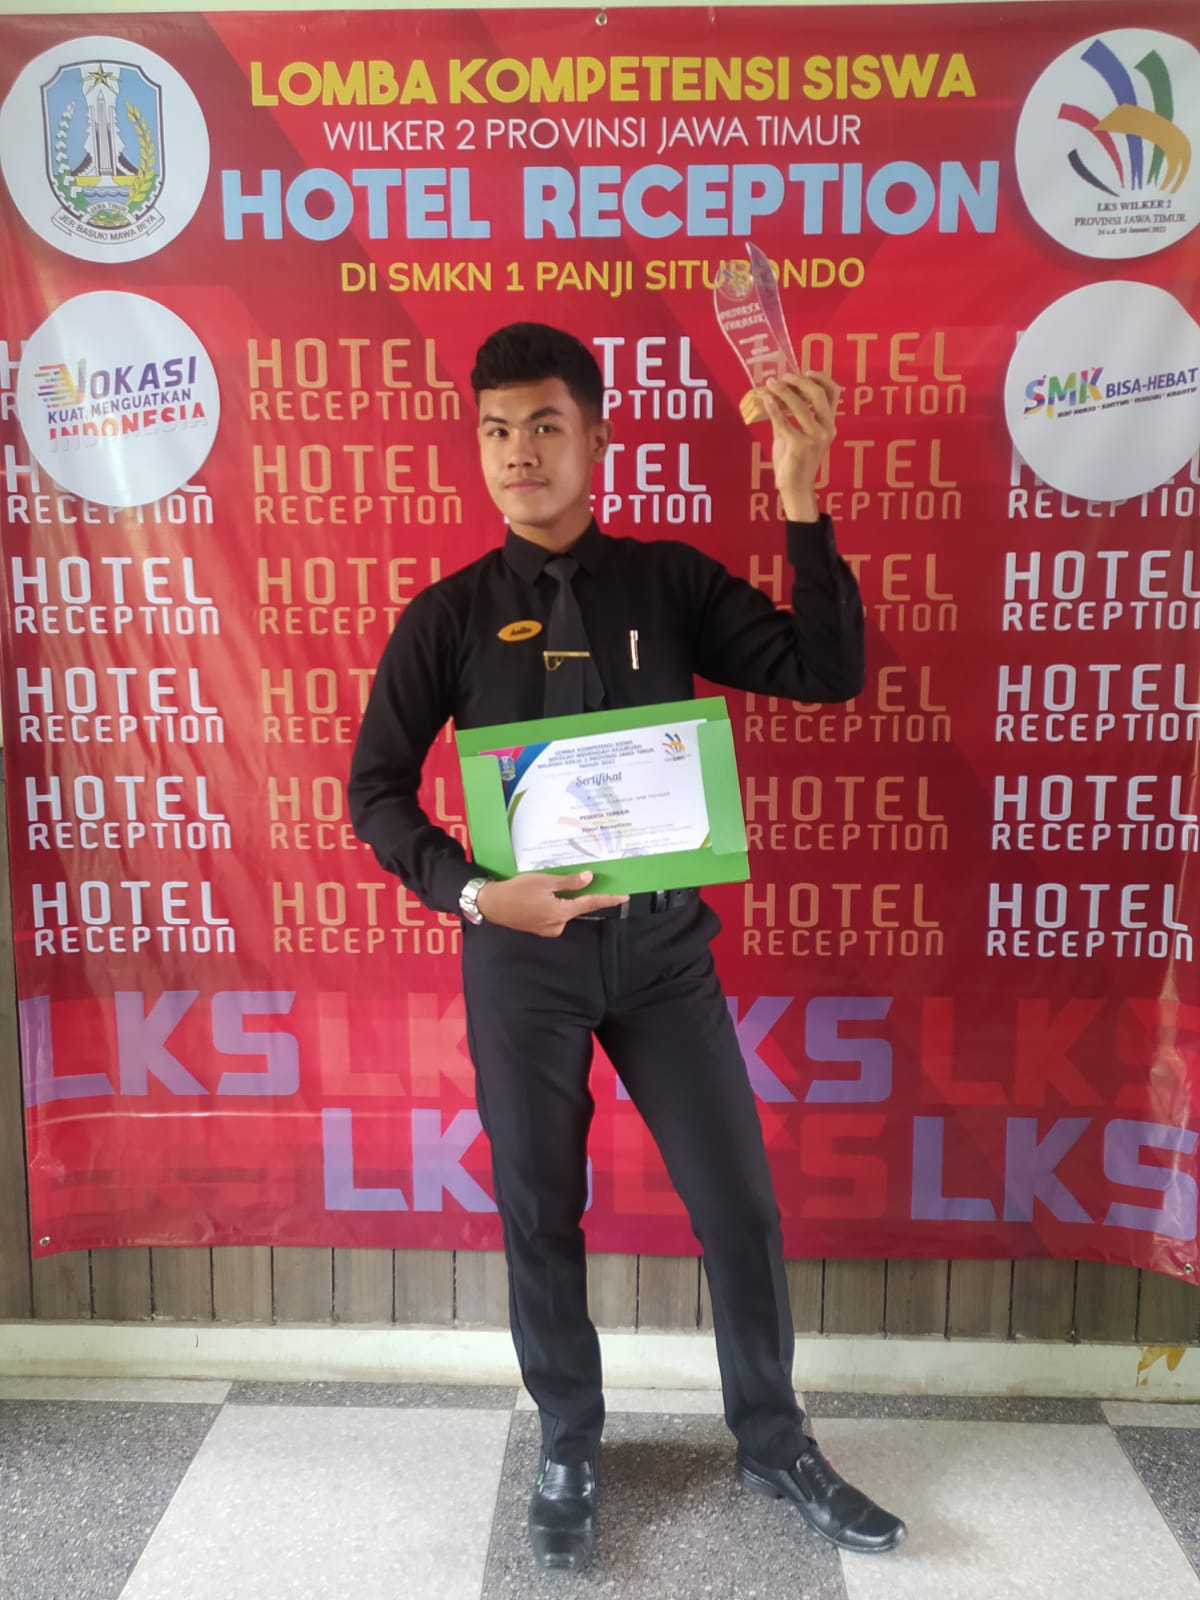 Siswa SMK 17 Muncar Jurusan Perhotelan Juara LKS di Wilker 2 dan lolos ke tingkat Provinsi